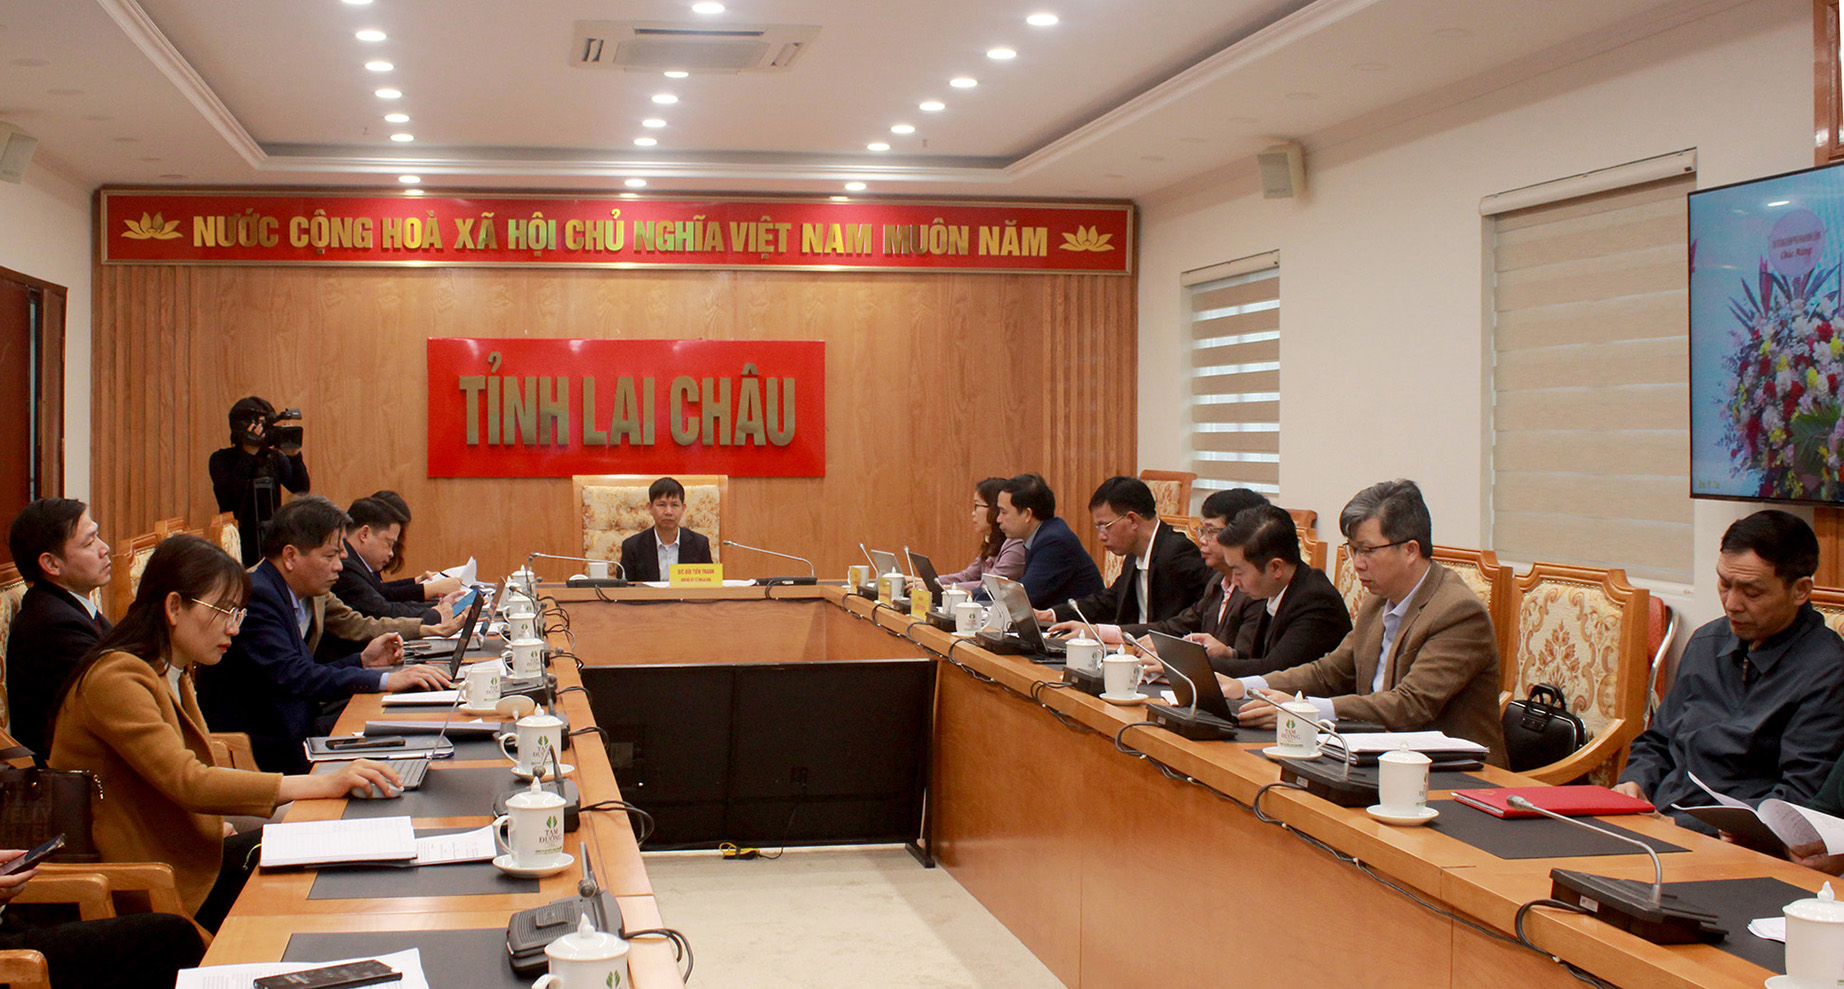 Các đại biểu dự điểm cầu tỉnh Lai Châu.